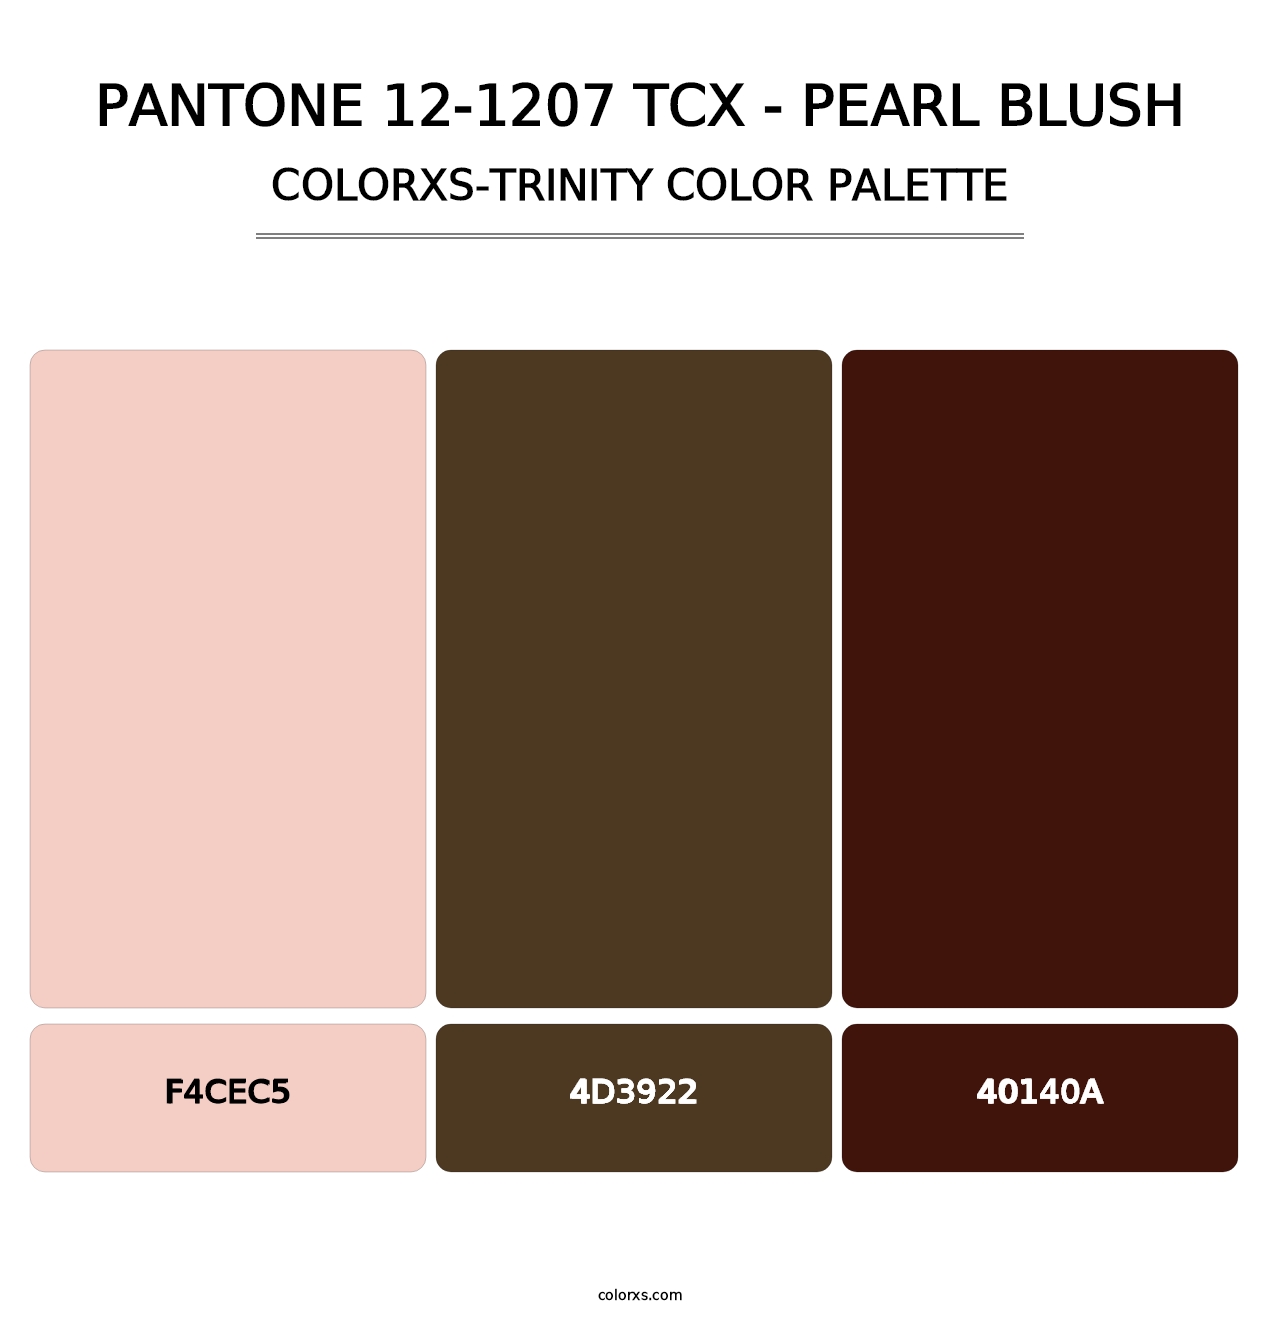 PANTONE 12-1207 TCX - Pearl Blush - Colorxs Trinity Palette